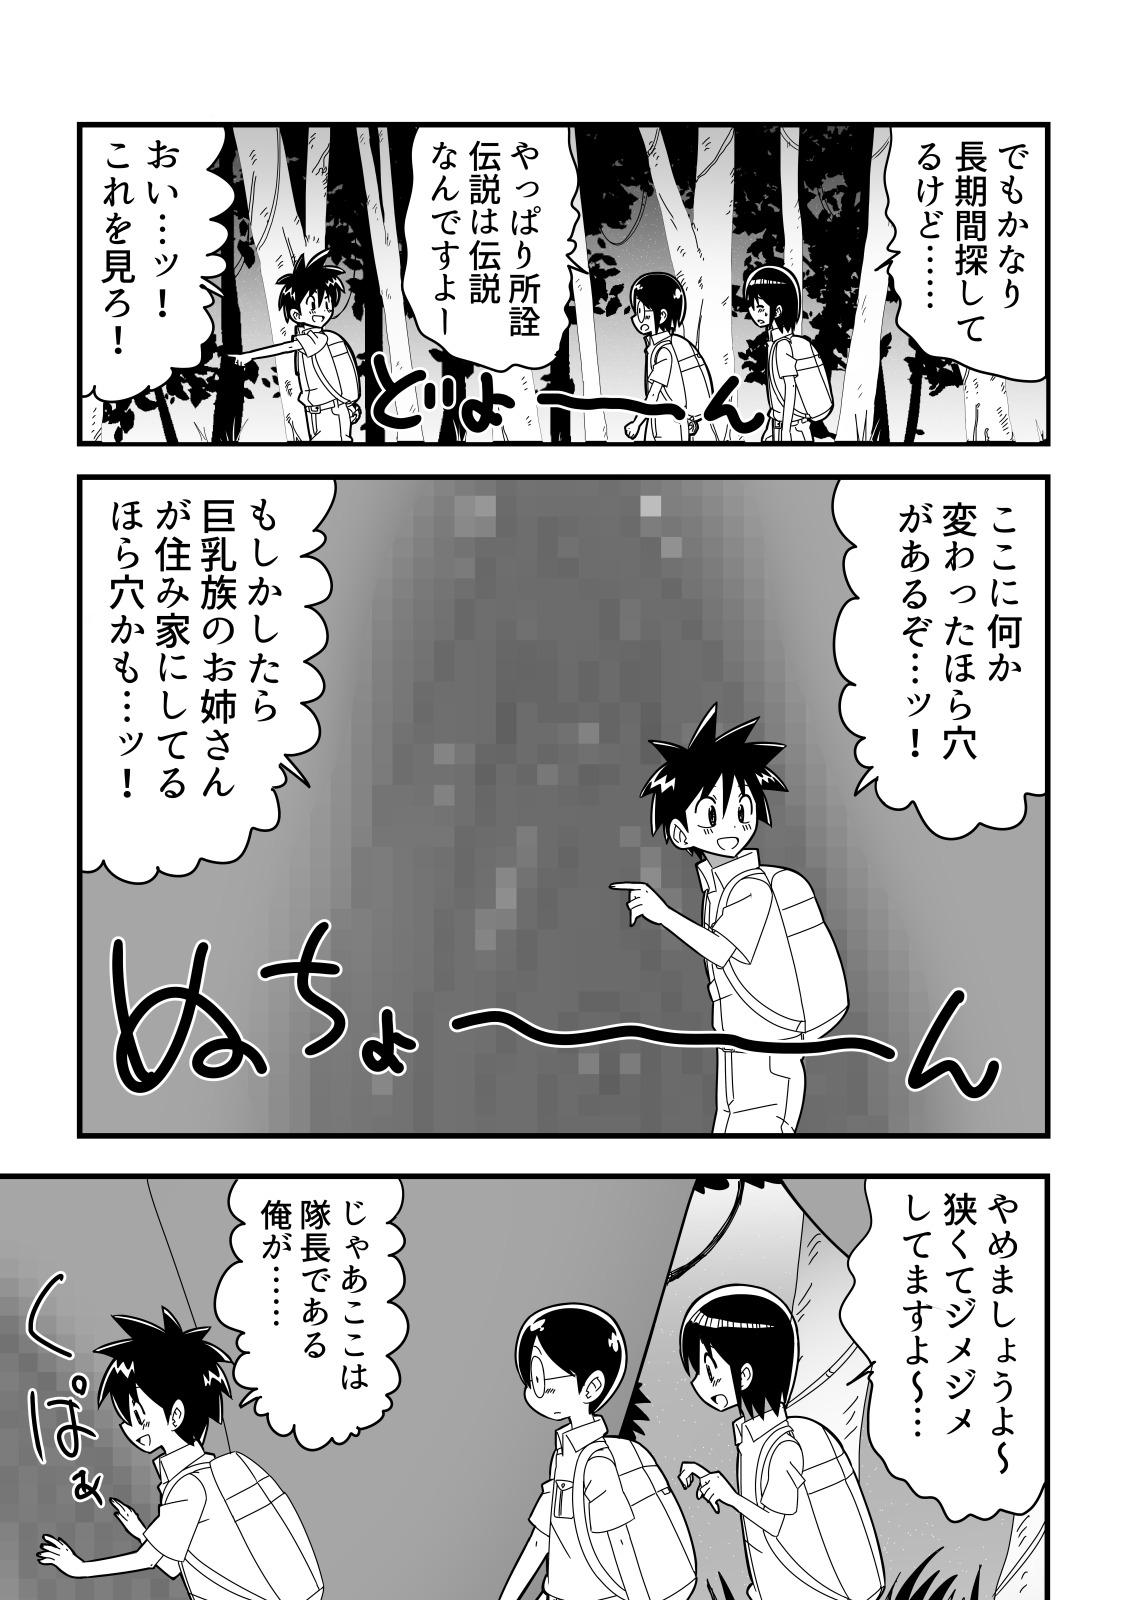 Dotado Jingai OneShota Manga Tsumeawase Shuu Vol. 1 - Original Camporn - Page 5